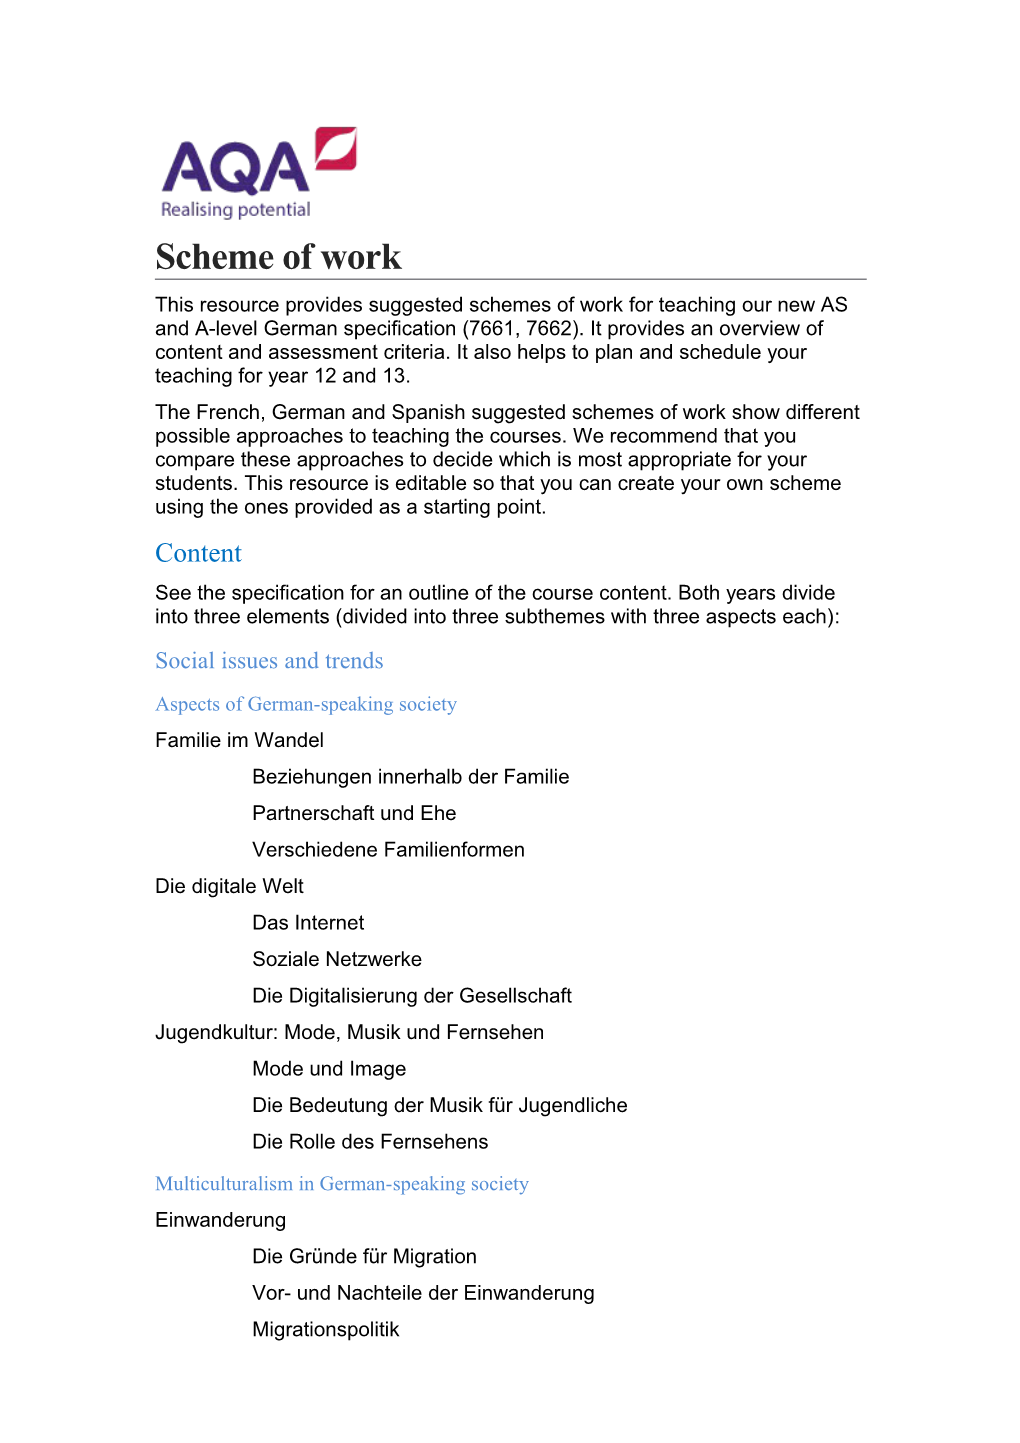 Scheme of Work s4